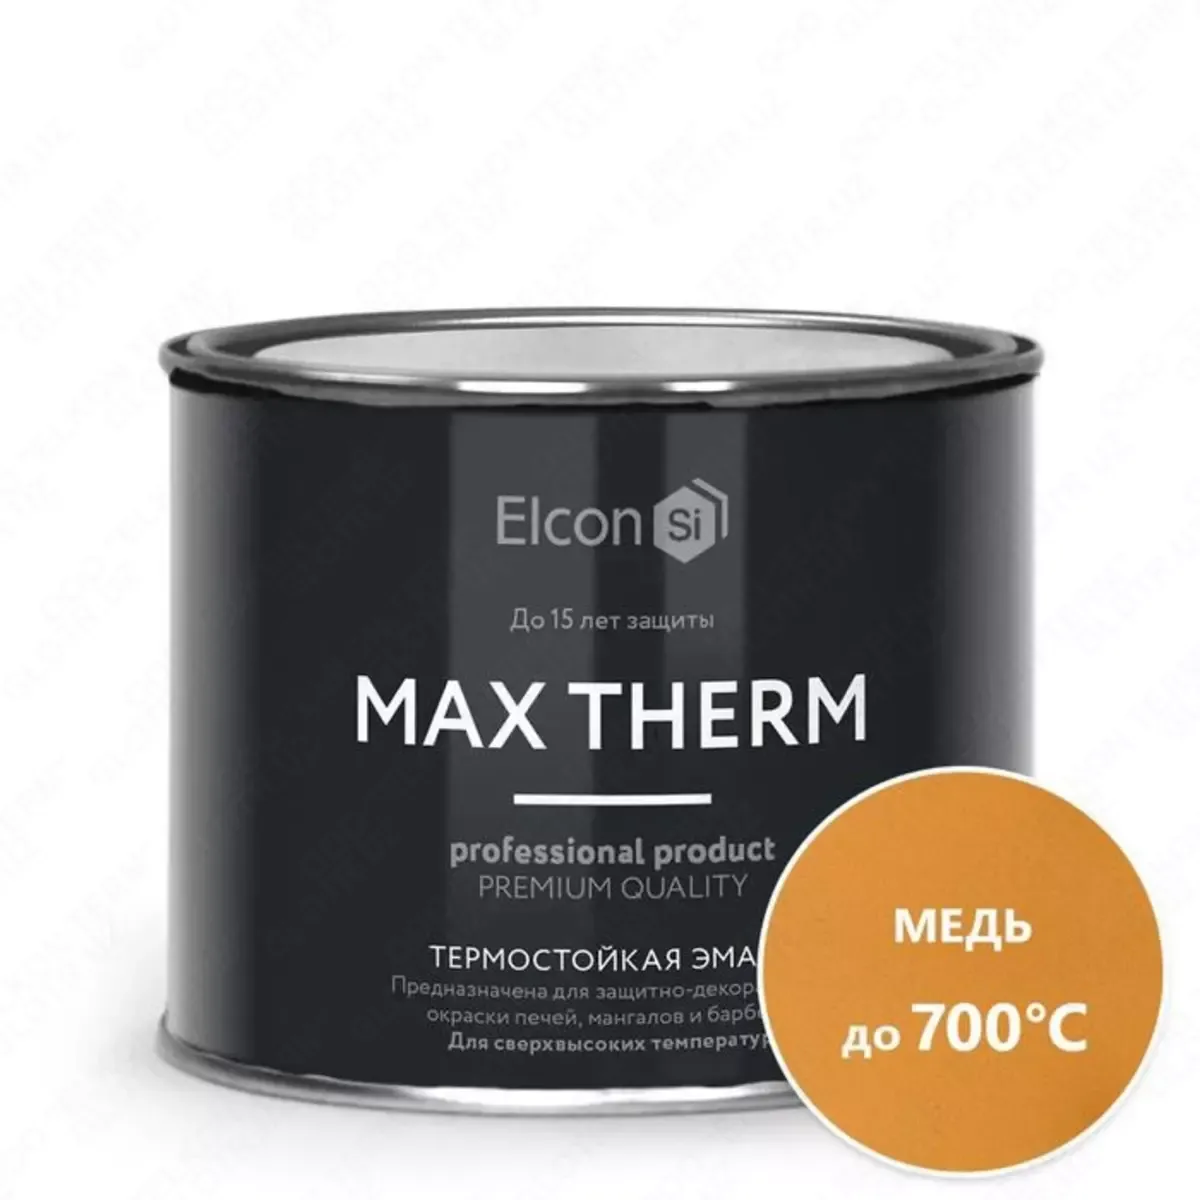 Термостойкая антикоррозийная эмаль Max Therm медь 0,4кг; 700°С#1